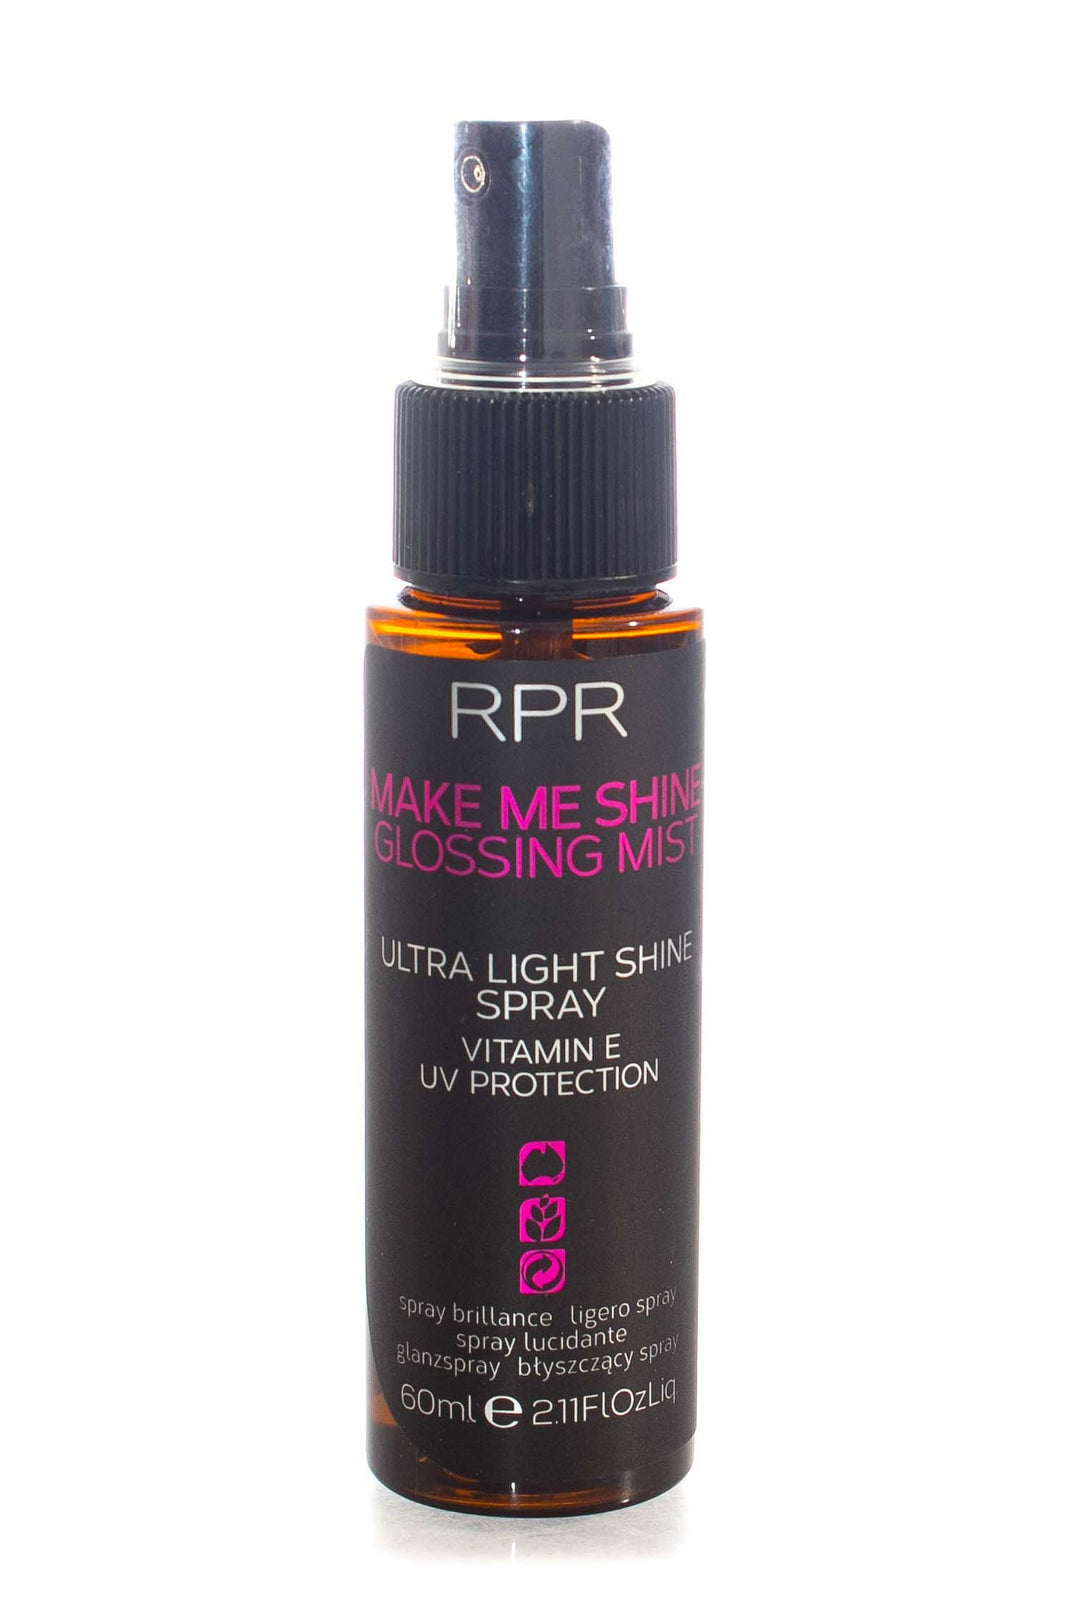 rpr-make-me-shine-glossing-mist-60ml